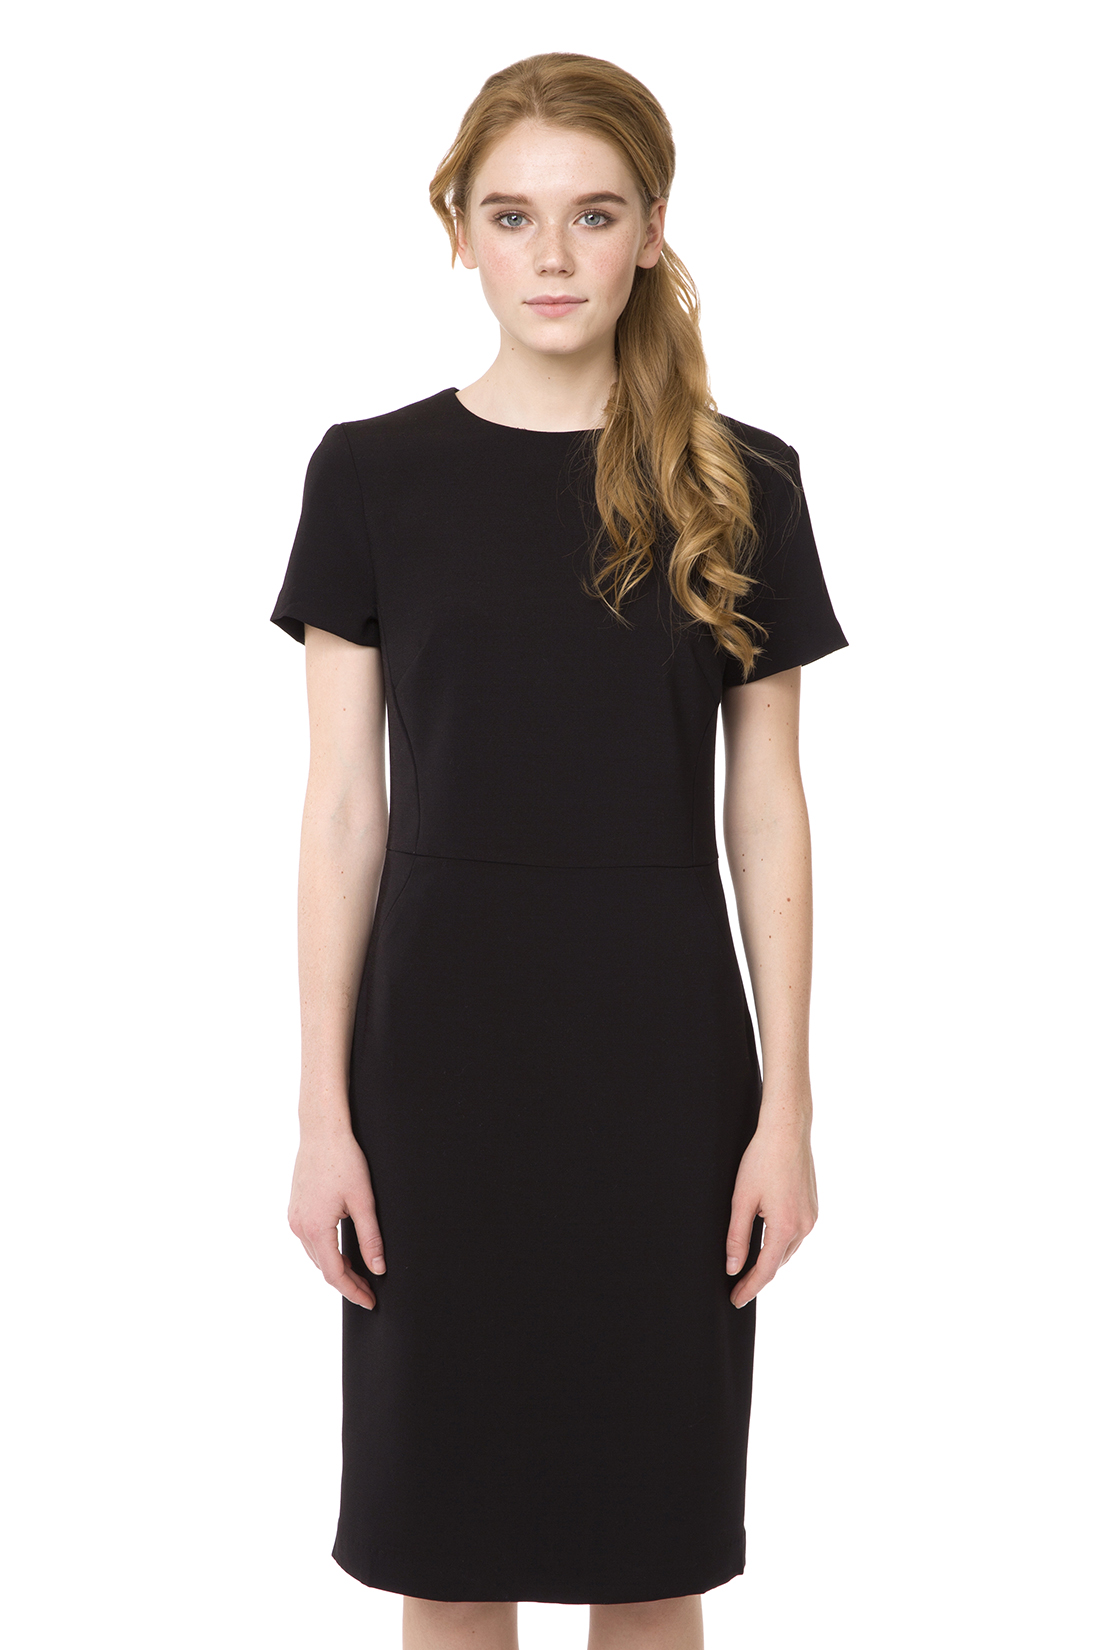 Приталенное чёрное платье (арт. baon B457072), размер L, цвет черный Приталенное чёрное платье (арт. baon B457072) - фото 5